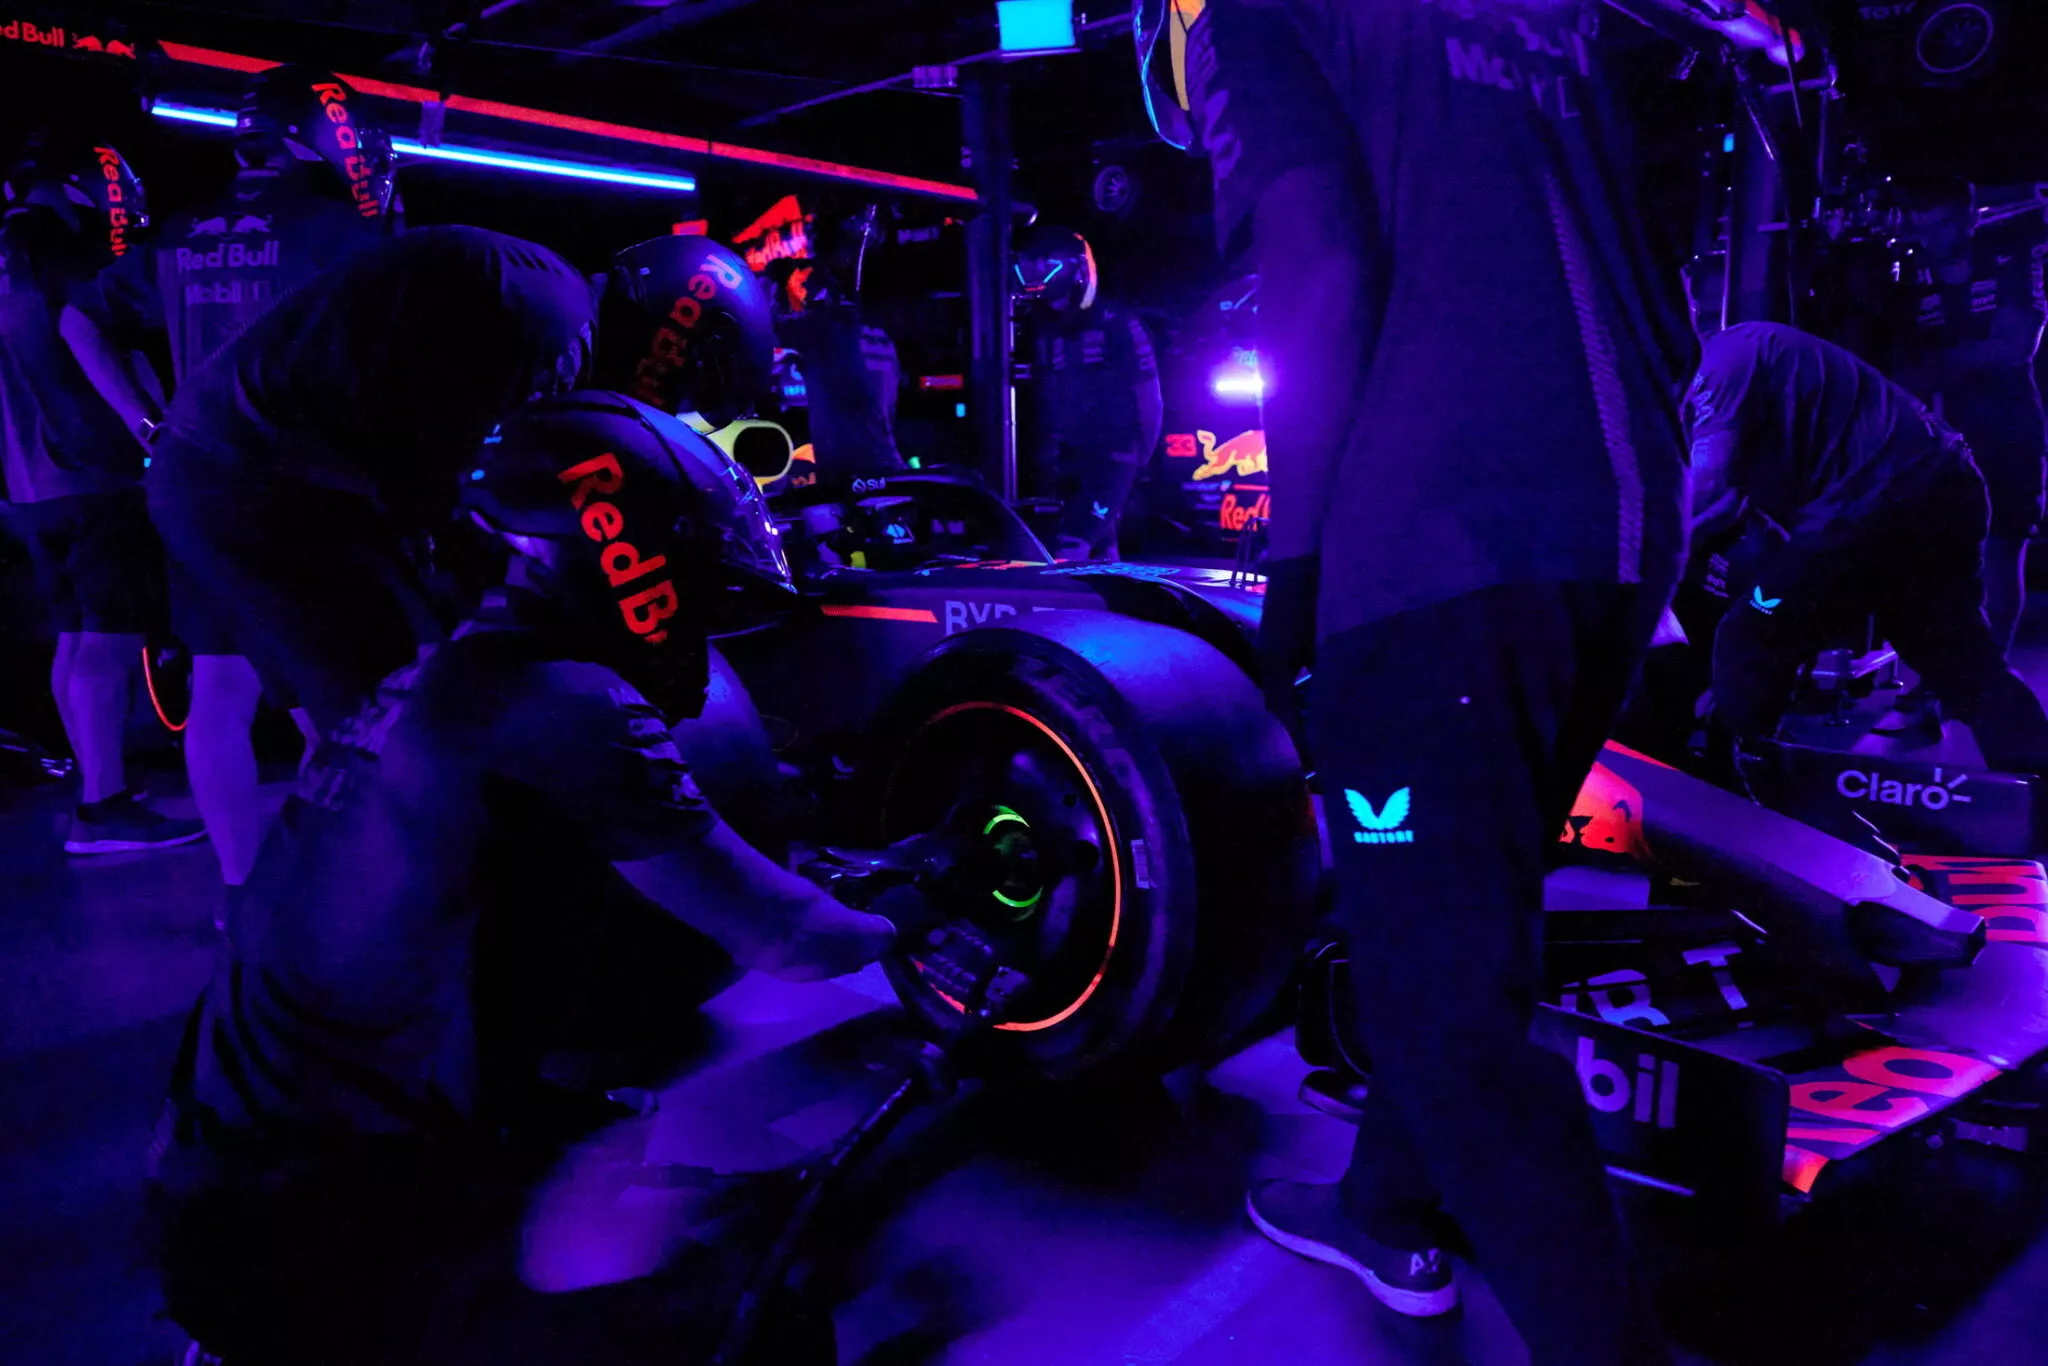 فريق ريد بول ينجح في تغيير إطارات سيارات فورمولا 1 في الظلام الدامس خلال 3 ثوان فقط! 2